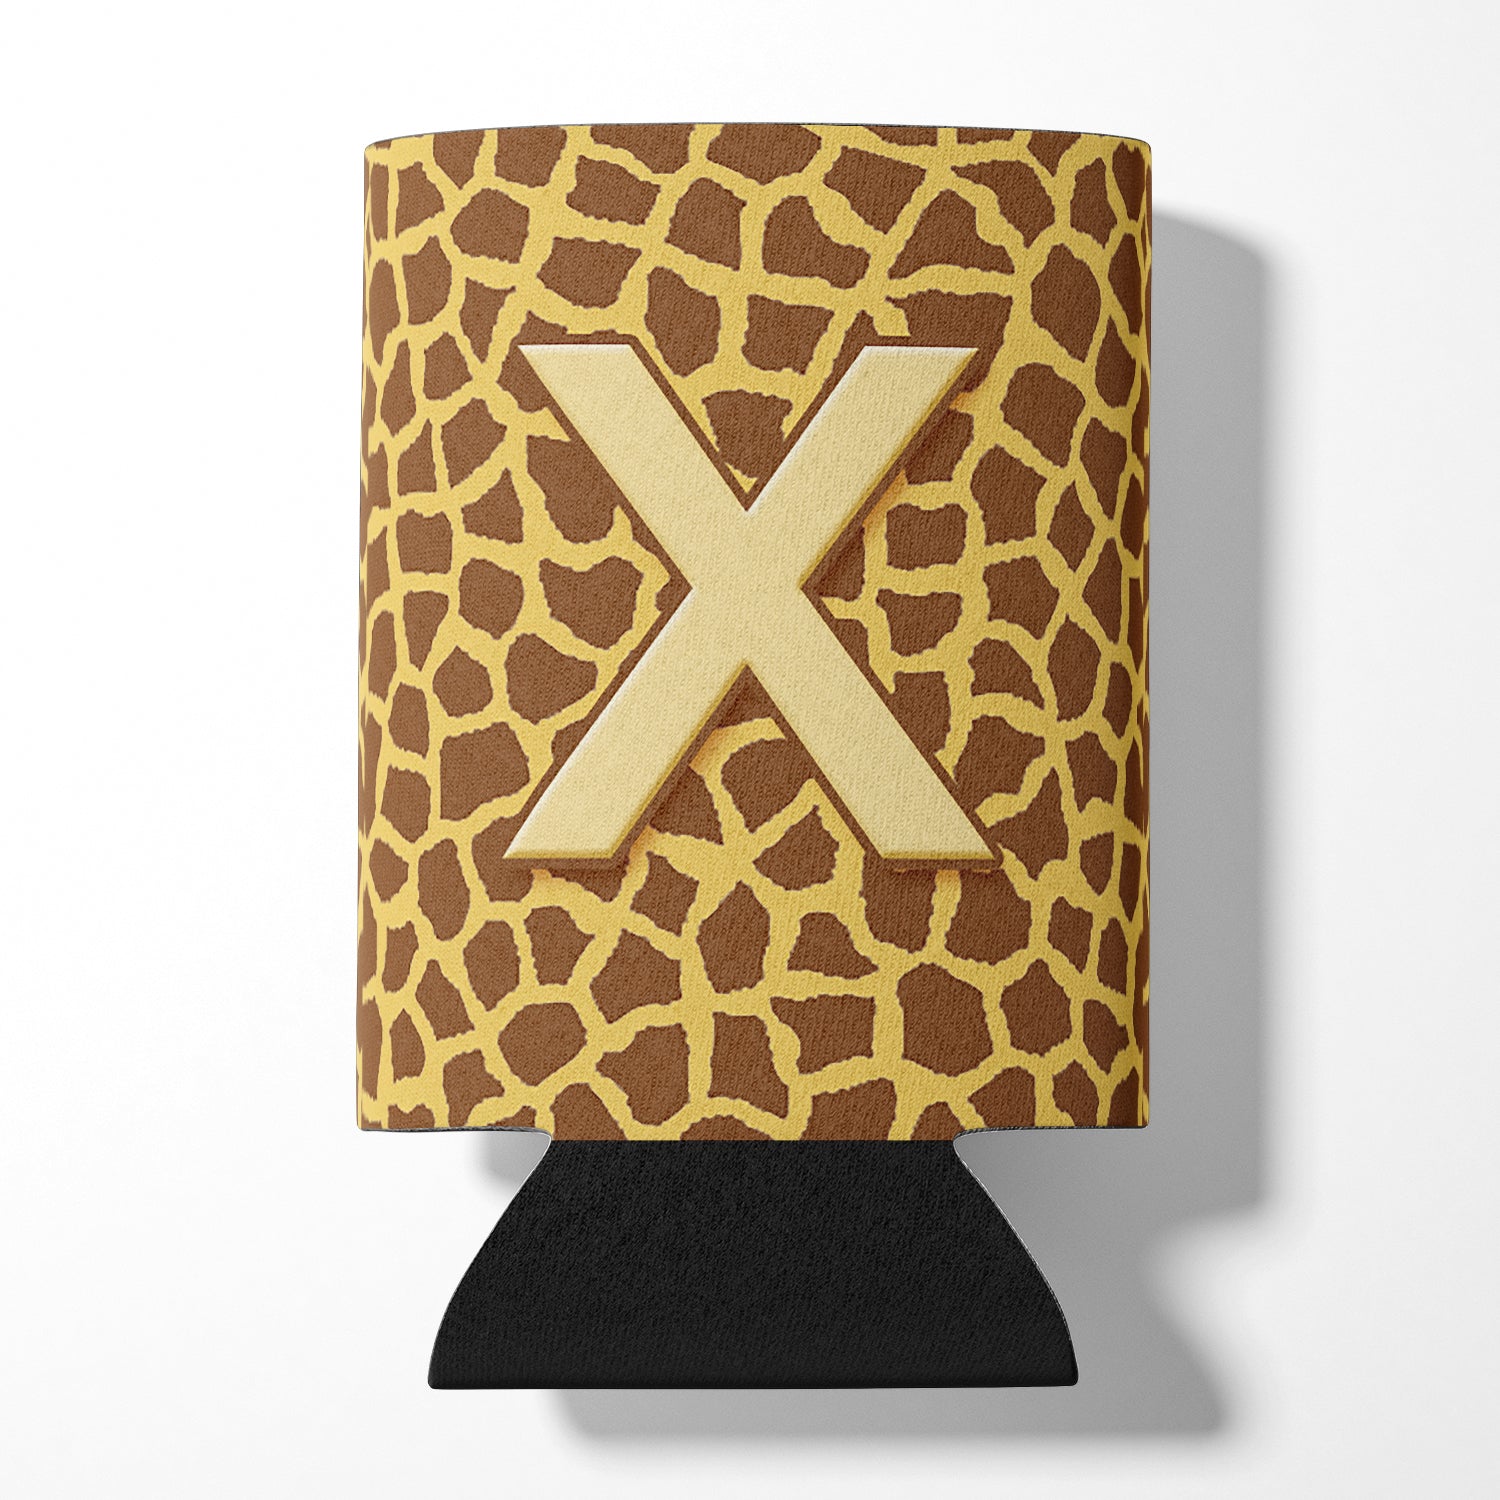 Lettre X Initial Monogram - Giraffe Can or Bottle Beverage Insulator Hugger